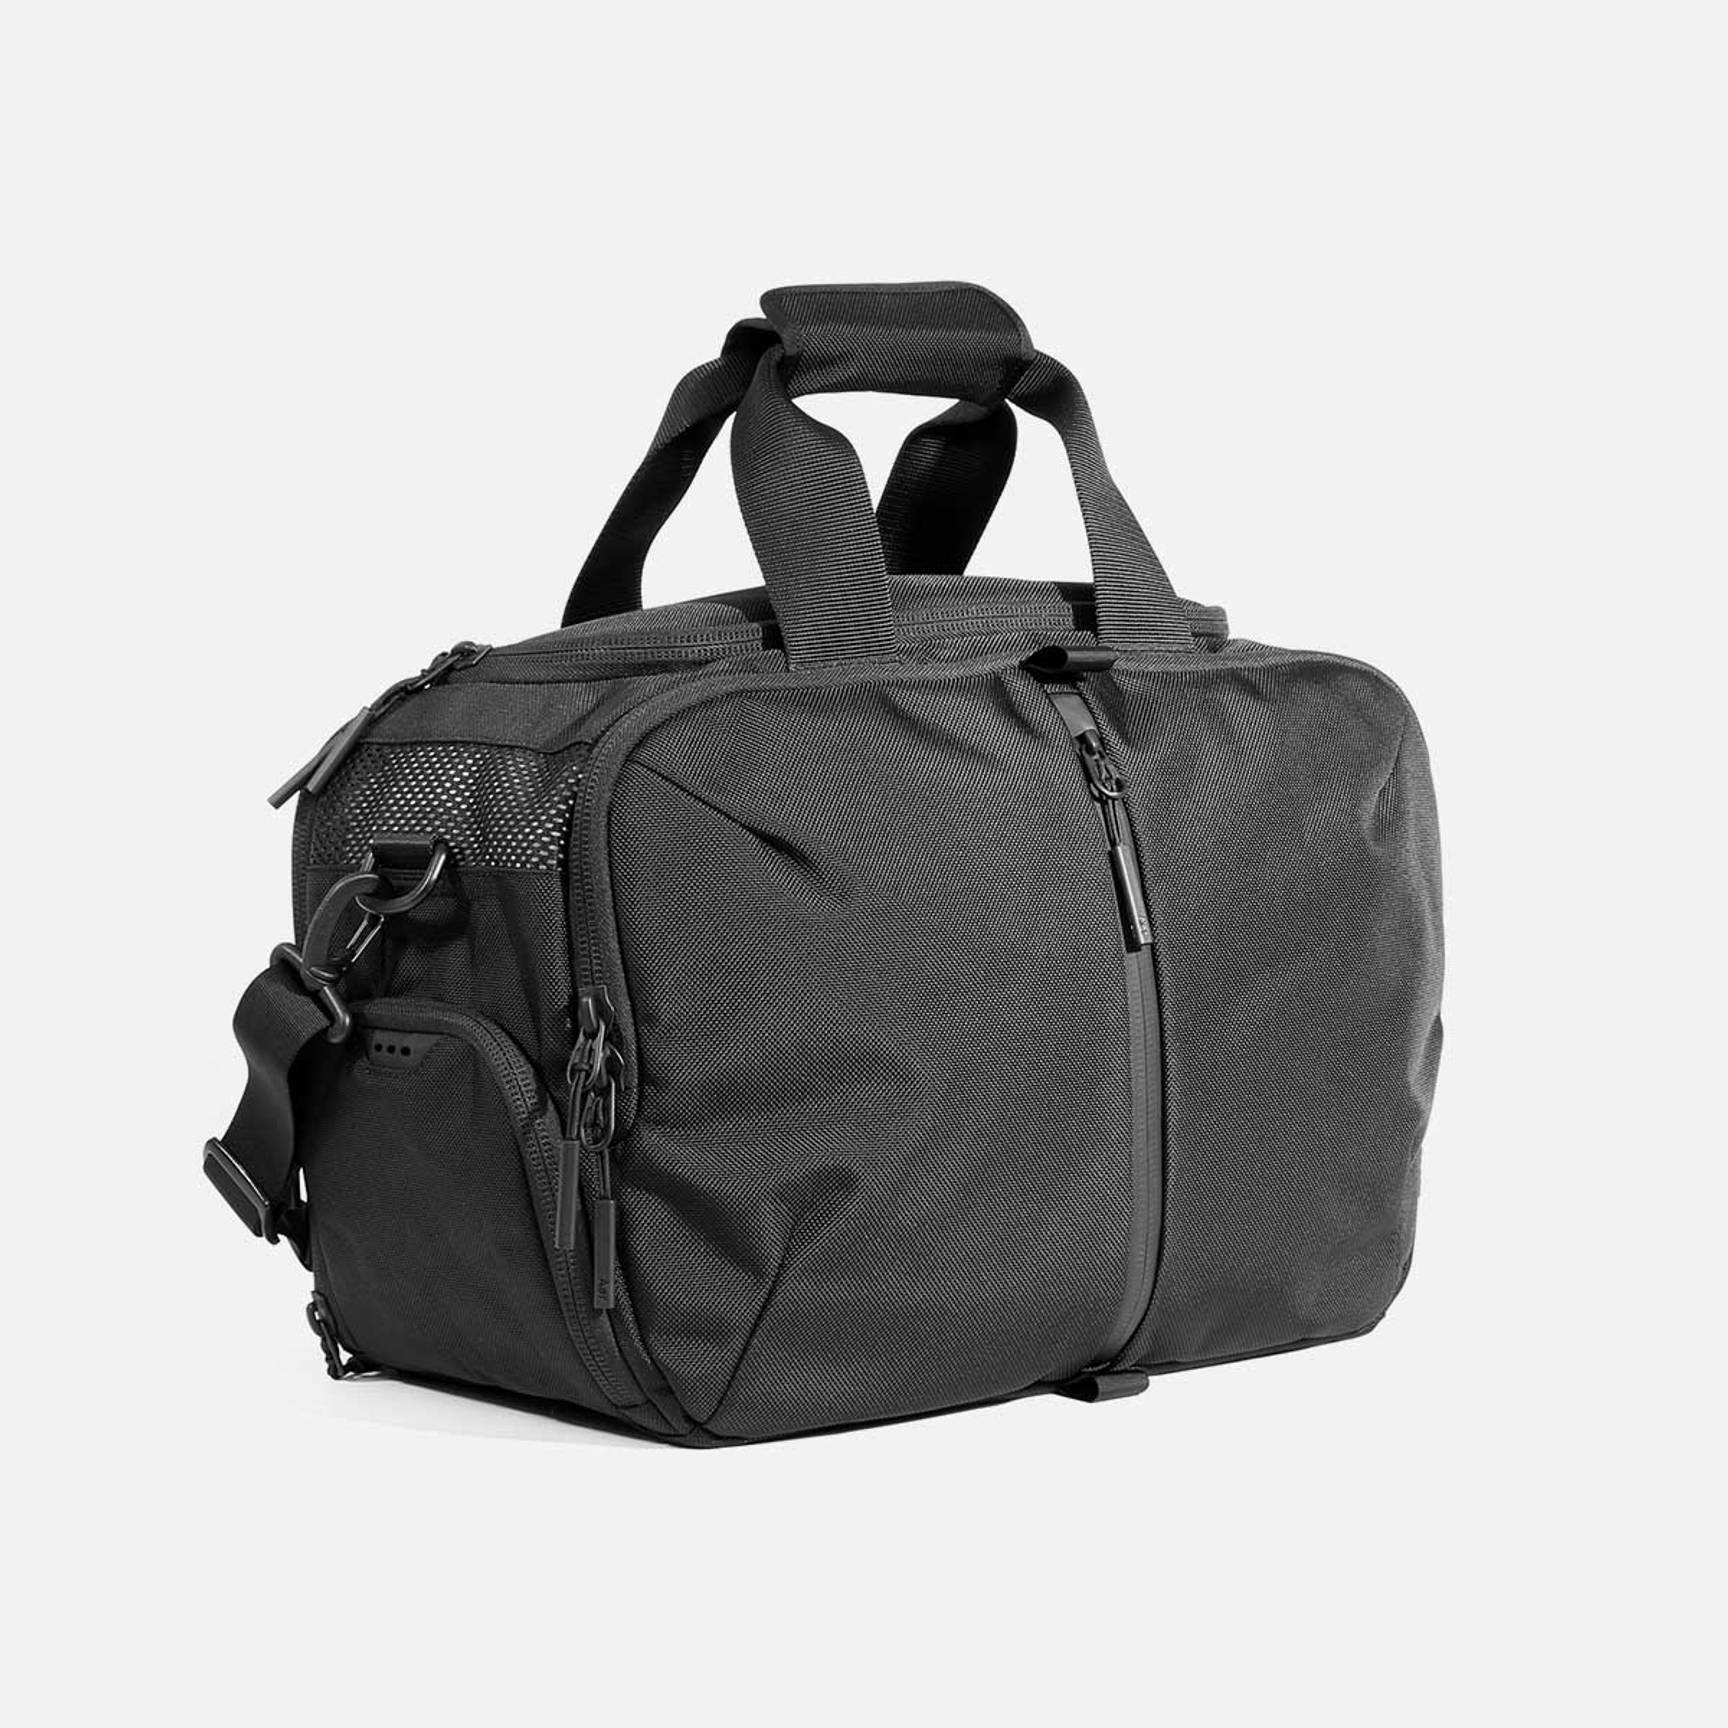 African Print Duffel Bag, Sport Gym Bag, Travel Duffel Bag For Men